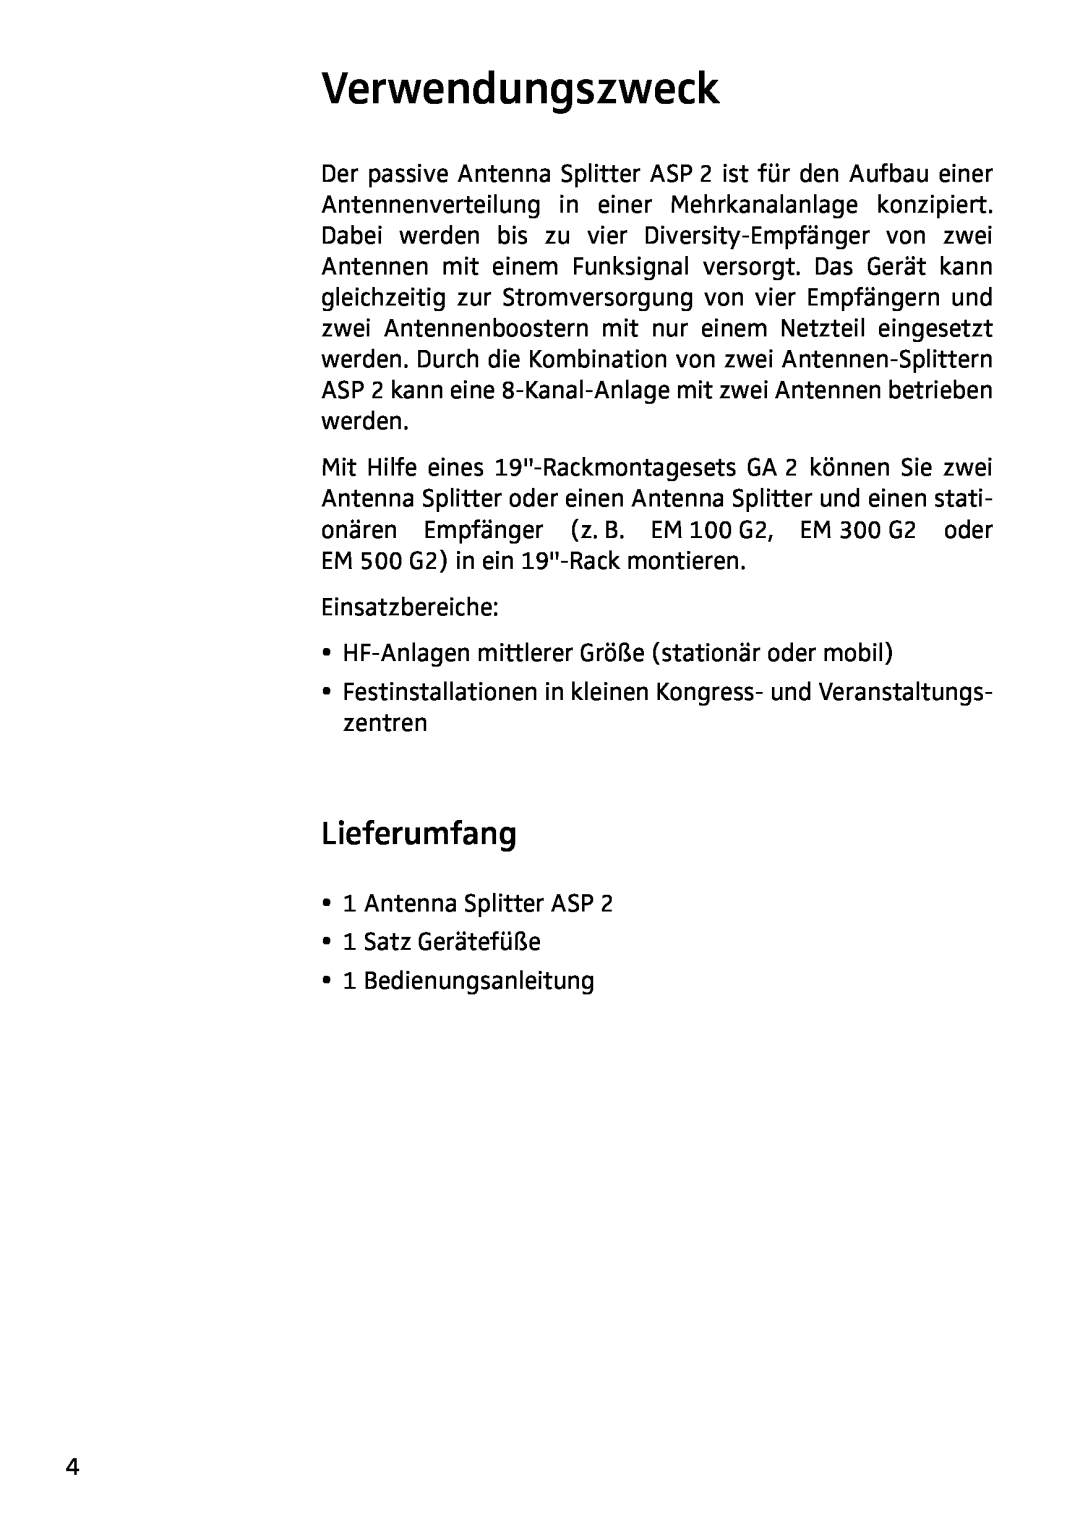 Sennheiser ASP 2 manual Verwendungszweck, Lieferumfang 